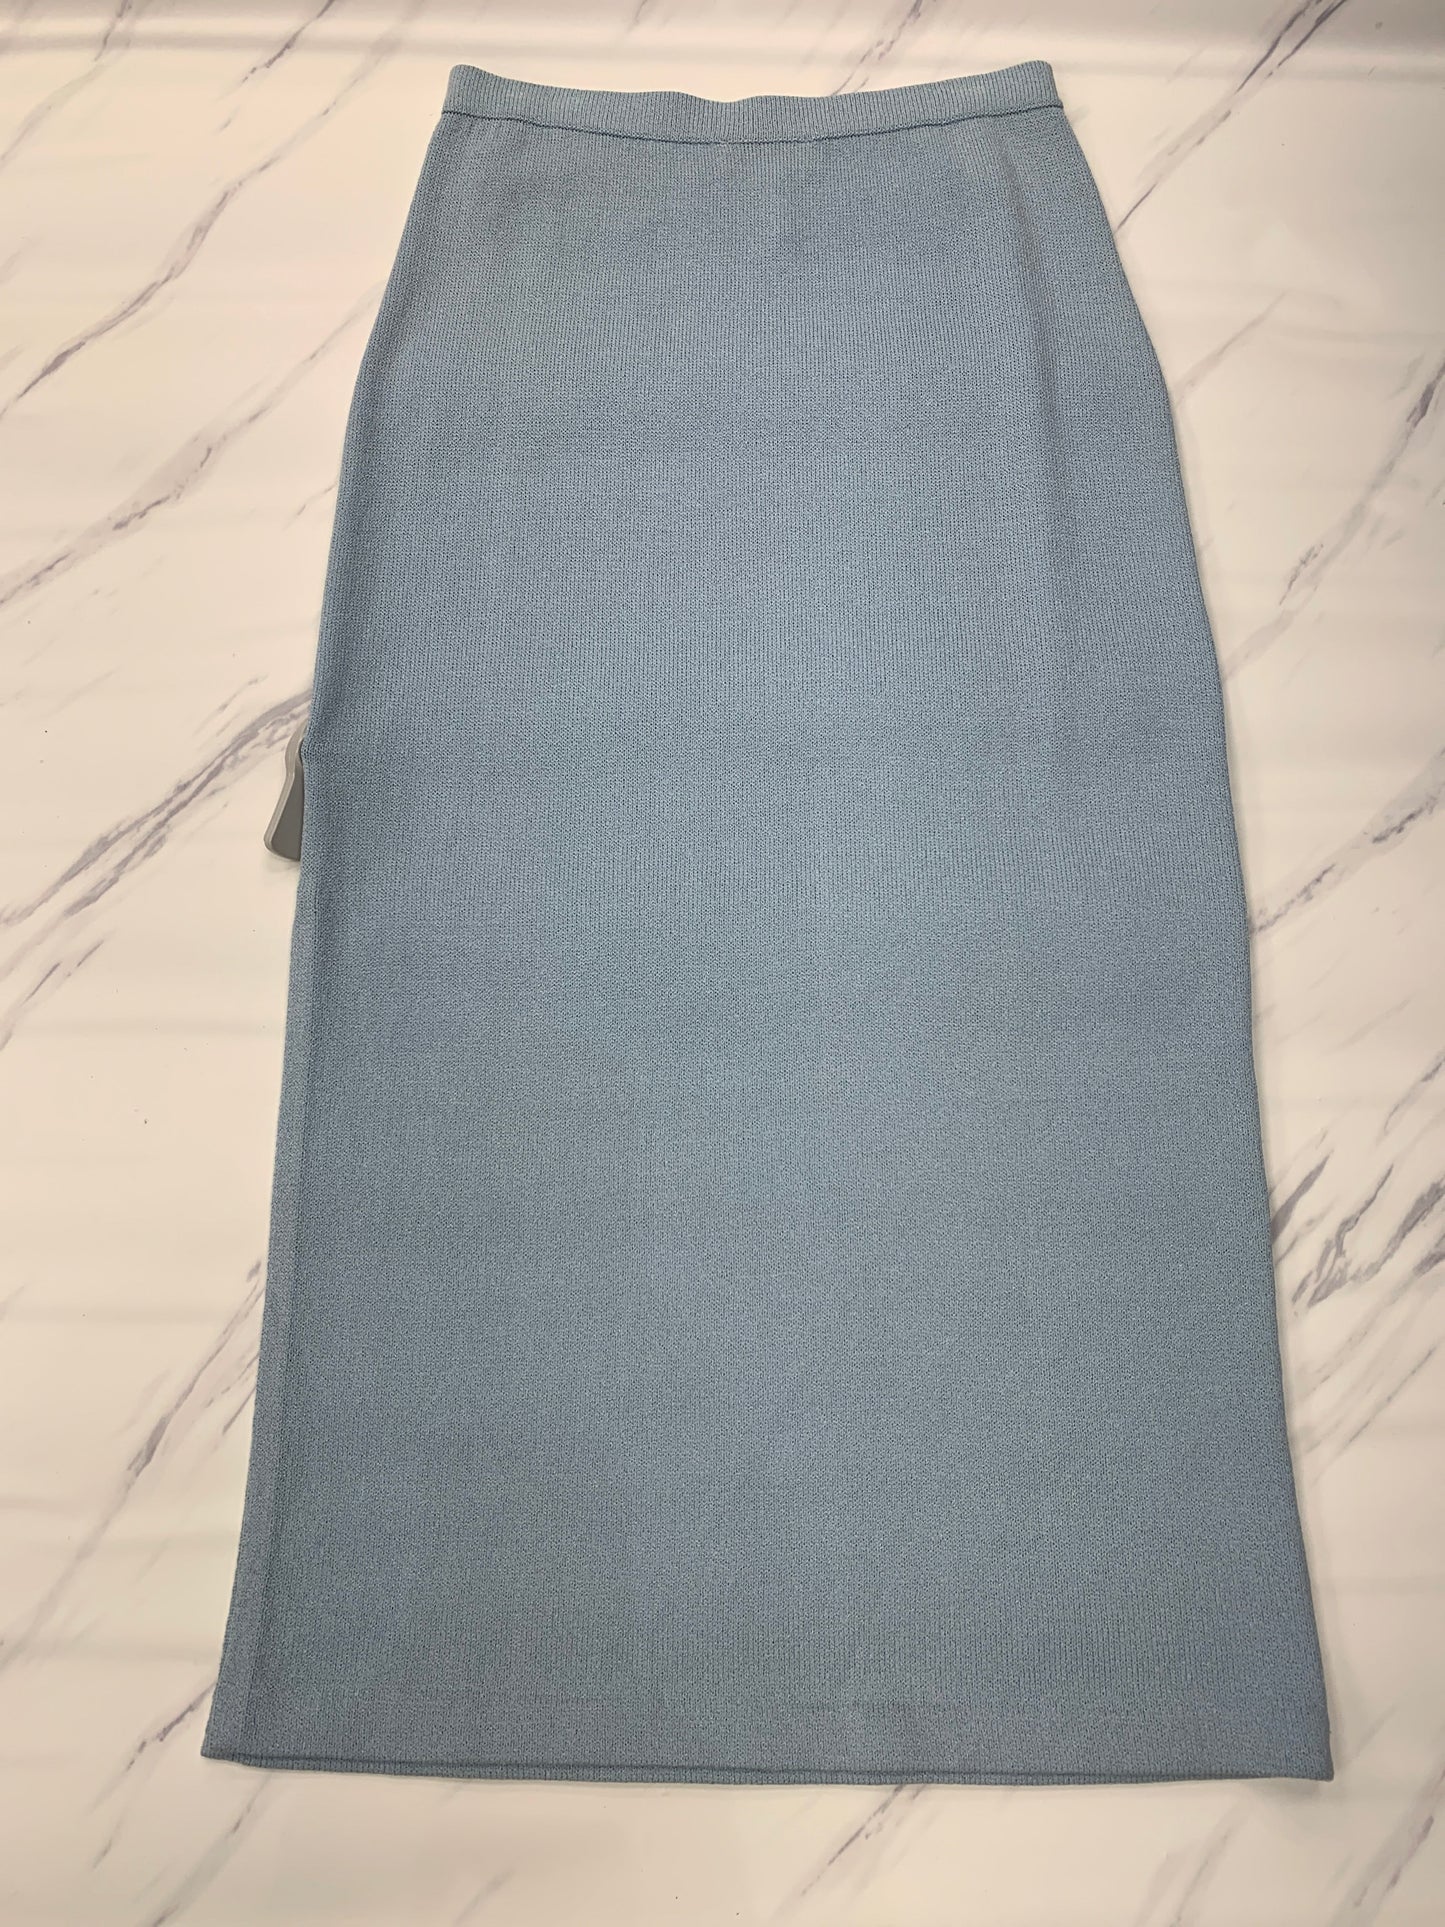 Blue Skirt Designer St John Collection, Size 14